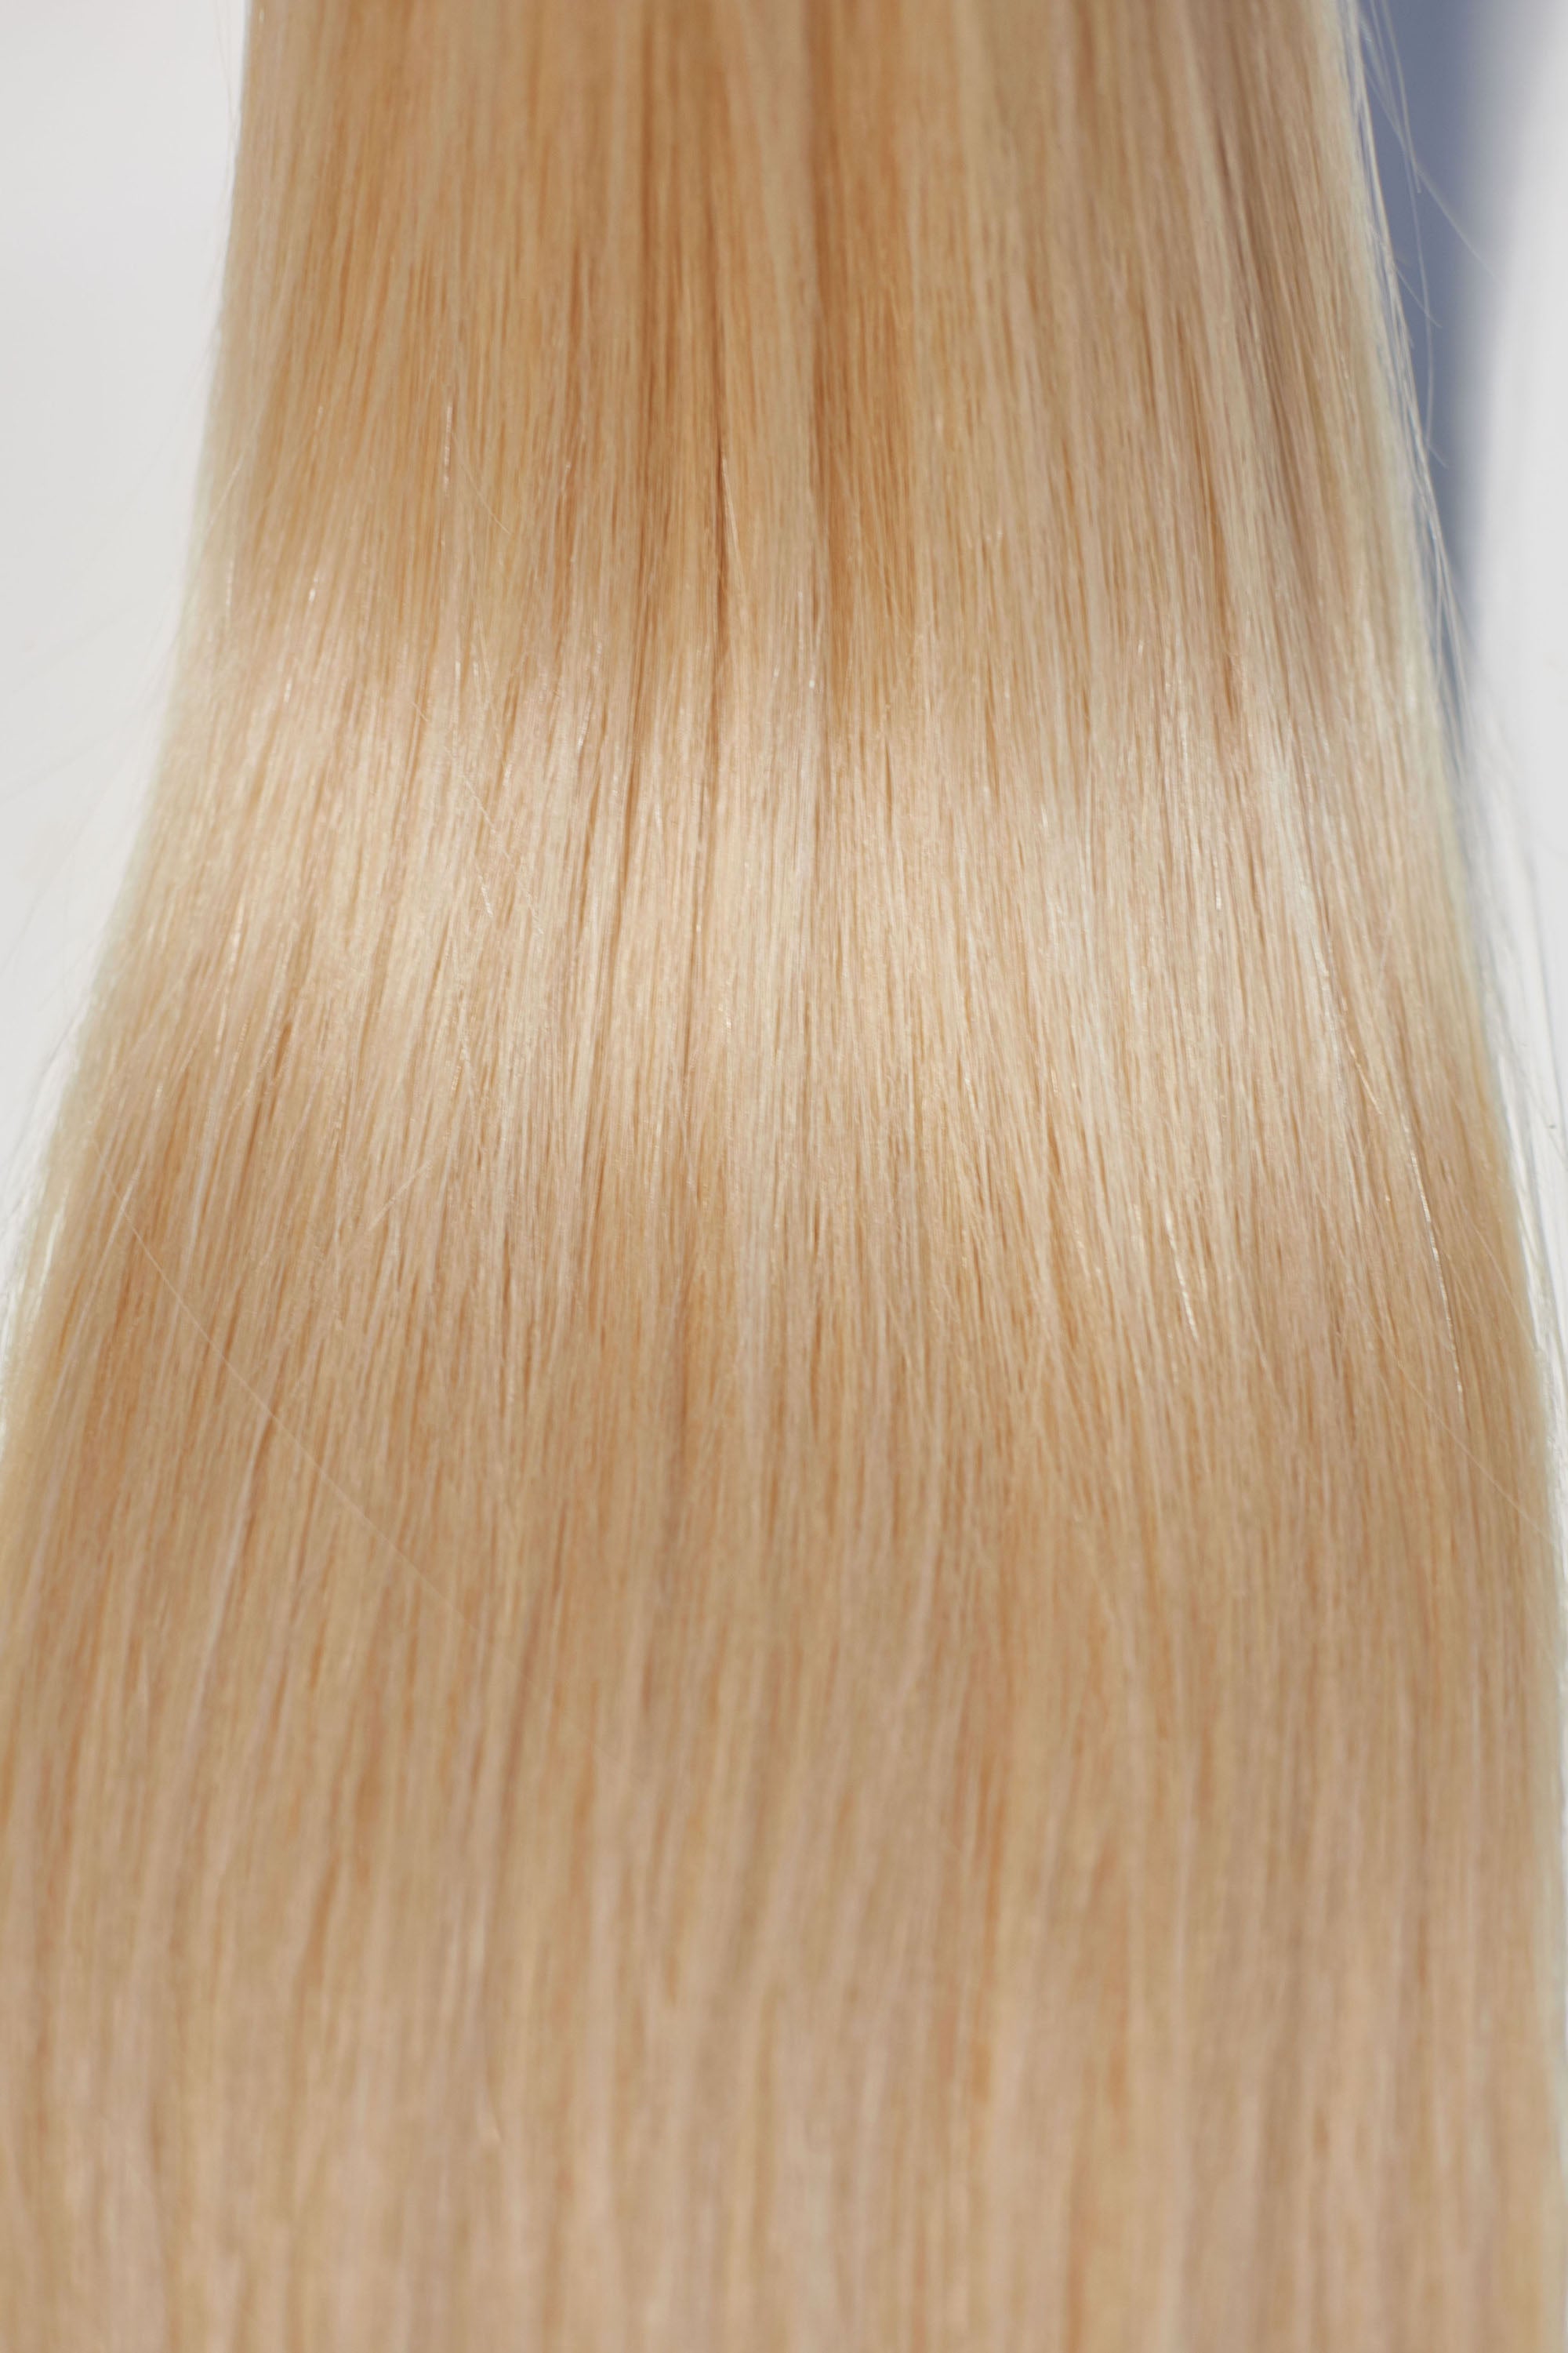 Behair professional Keratin Tip "Premium" 22" (55cm) Natural Straight Beach Blonde #613 - 25g (Micro - 0.5g each pcs) hair extensions